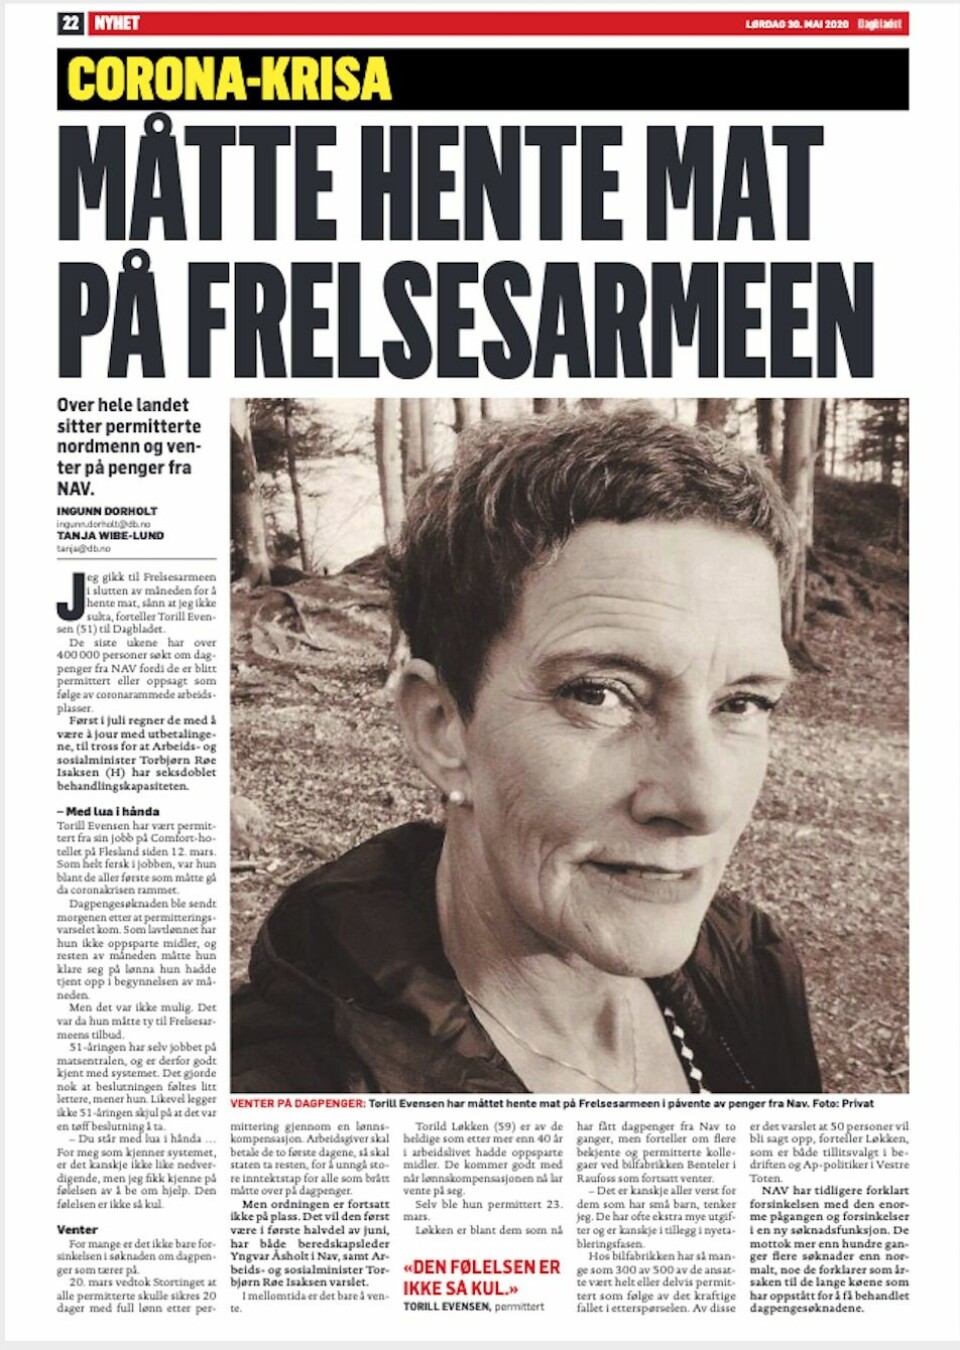 Faksemile, Dagbladet, 30.05.20